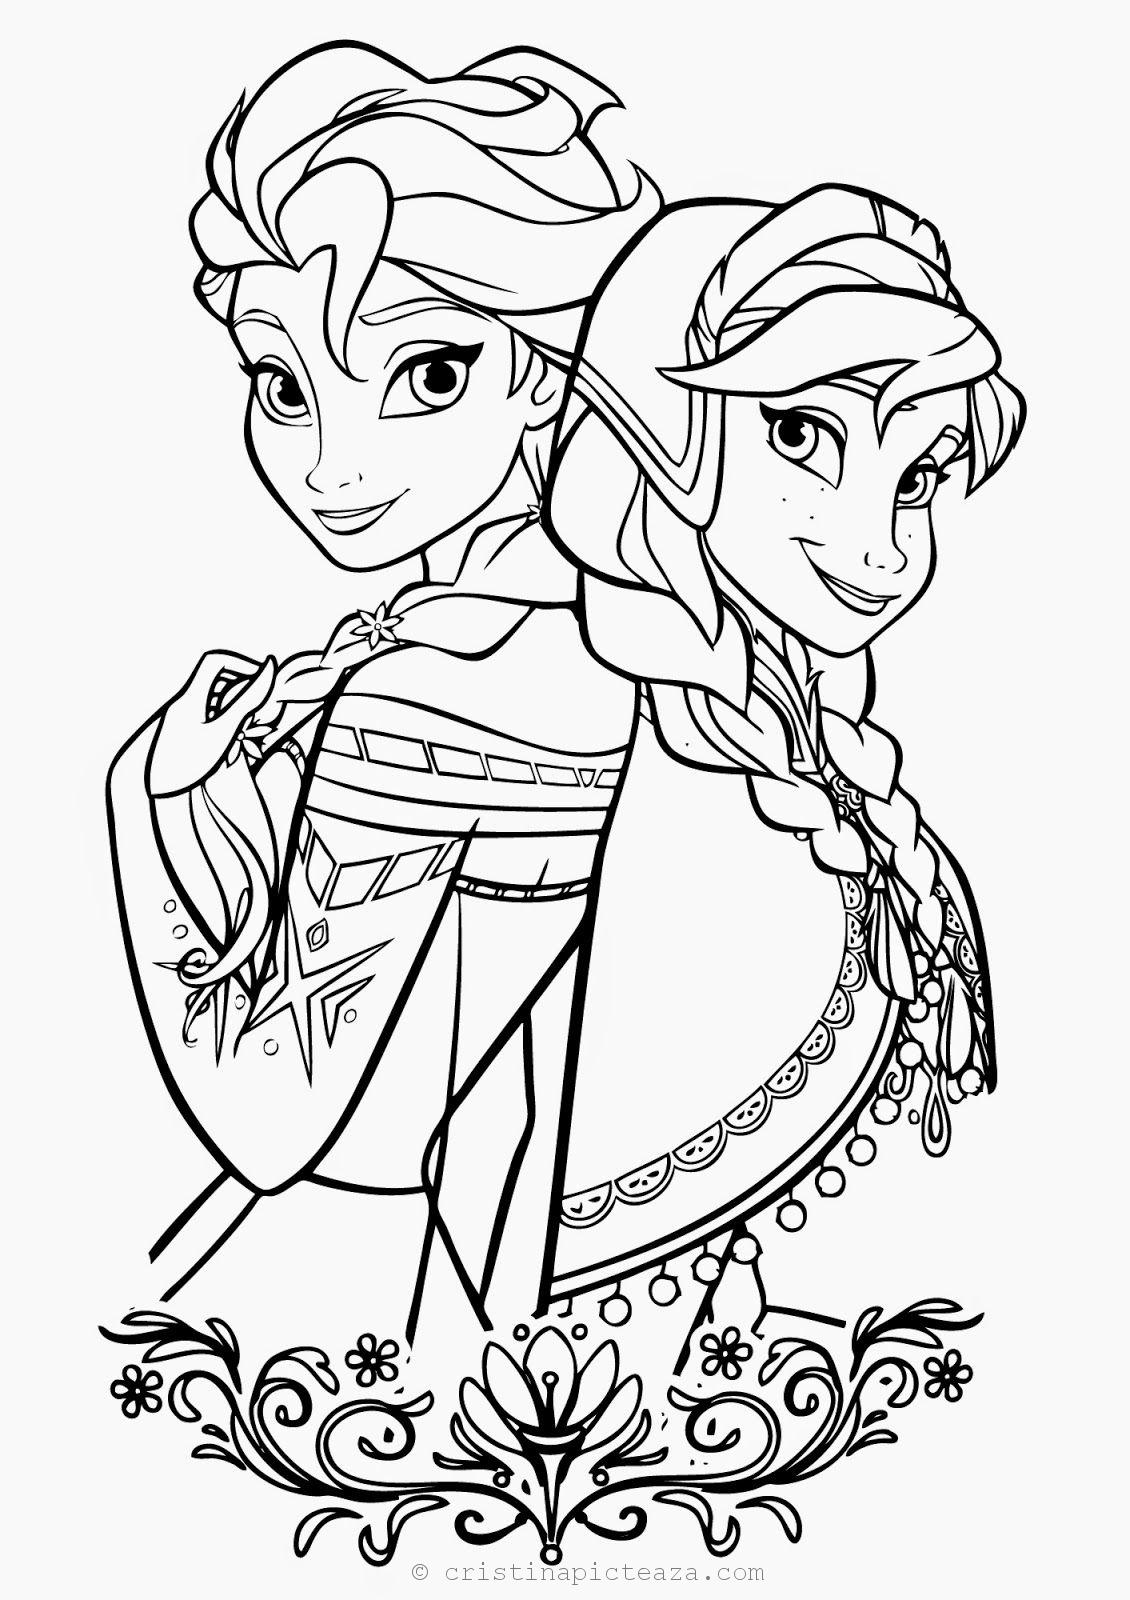 Planse de colorat Frozen / Regatul de Gheata 2 - Planse cu Elsa si Anna